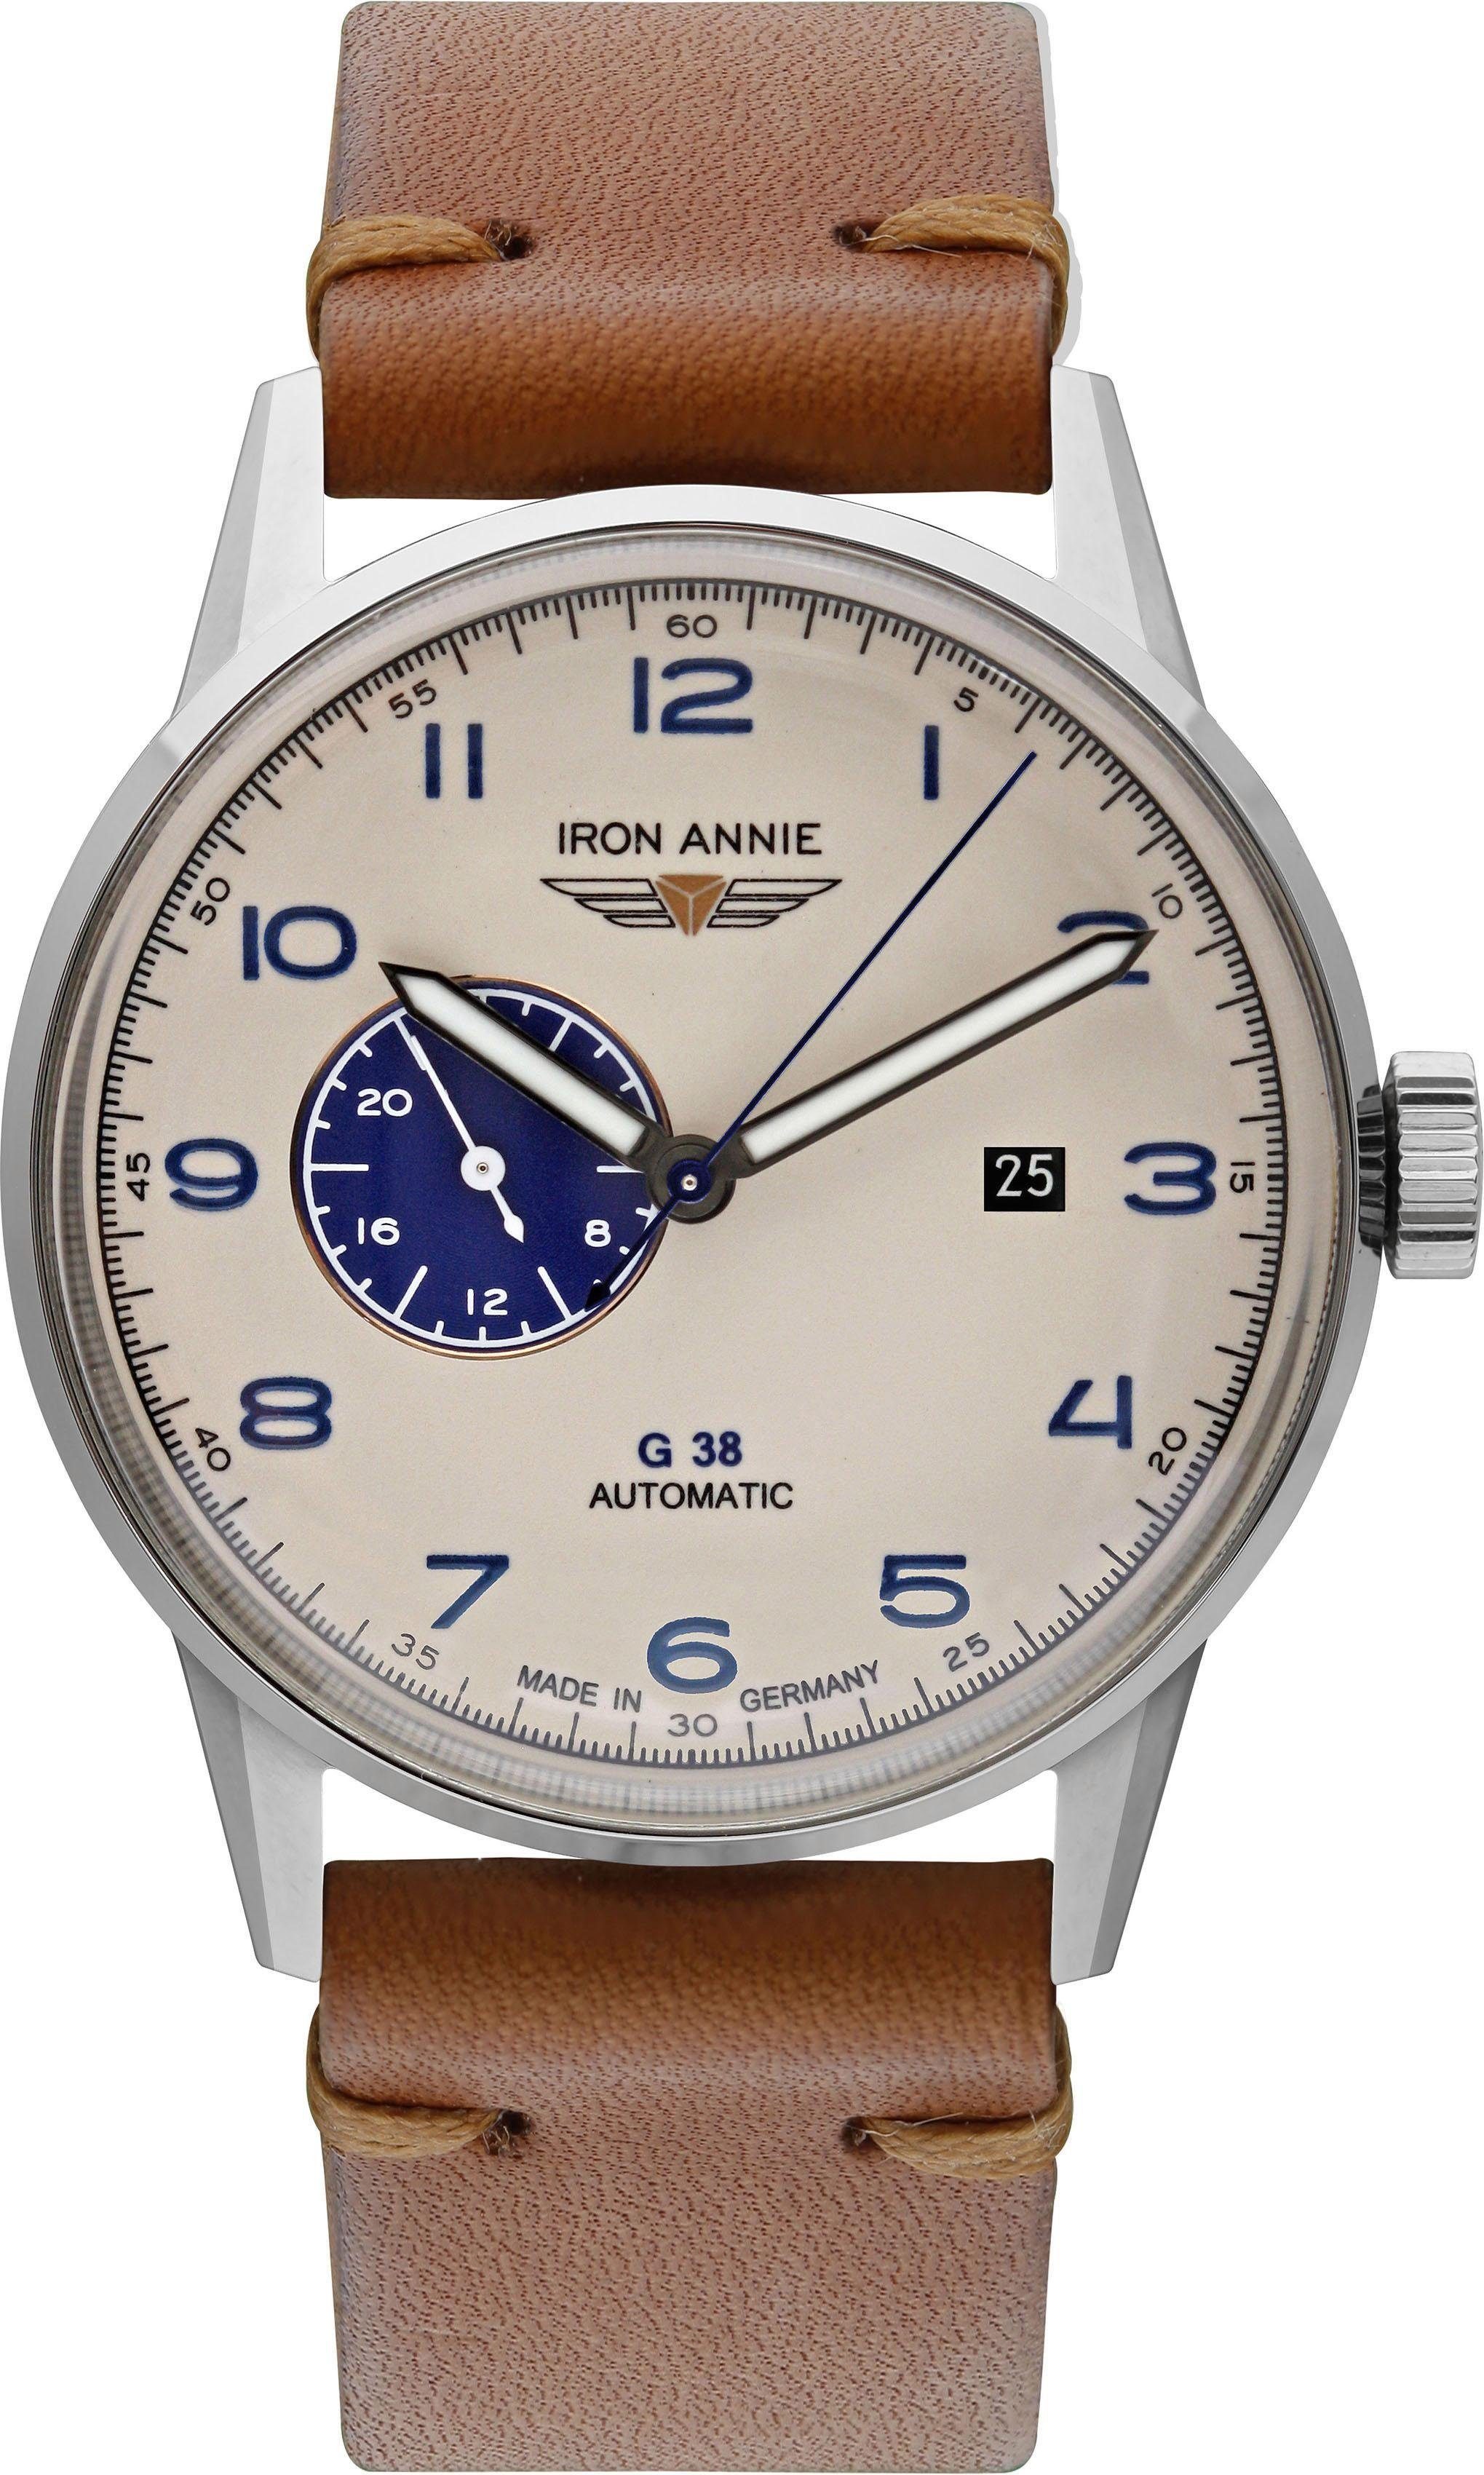 IRON ANNIE Automatikuhr G38, 5368-5, Armbanduhr, Herrenuhr, Datum, Made in Germany